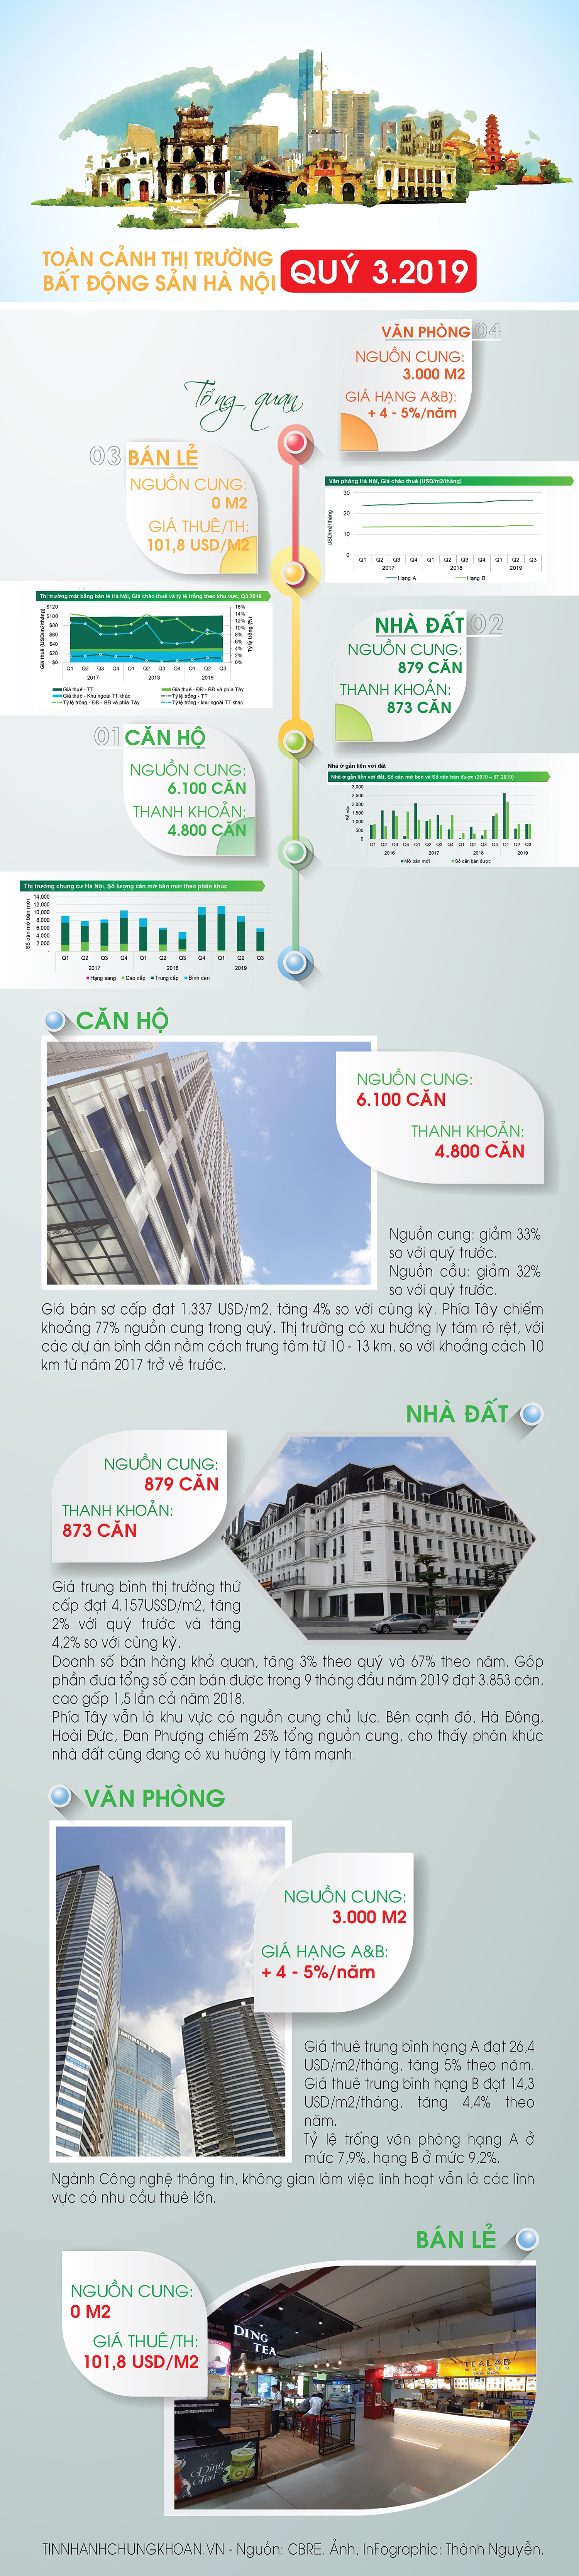  [Infographic] Toàn cảnh thị trường bất động sản Hà Nội quý III/2019  - Ảnh 1